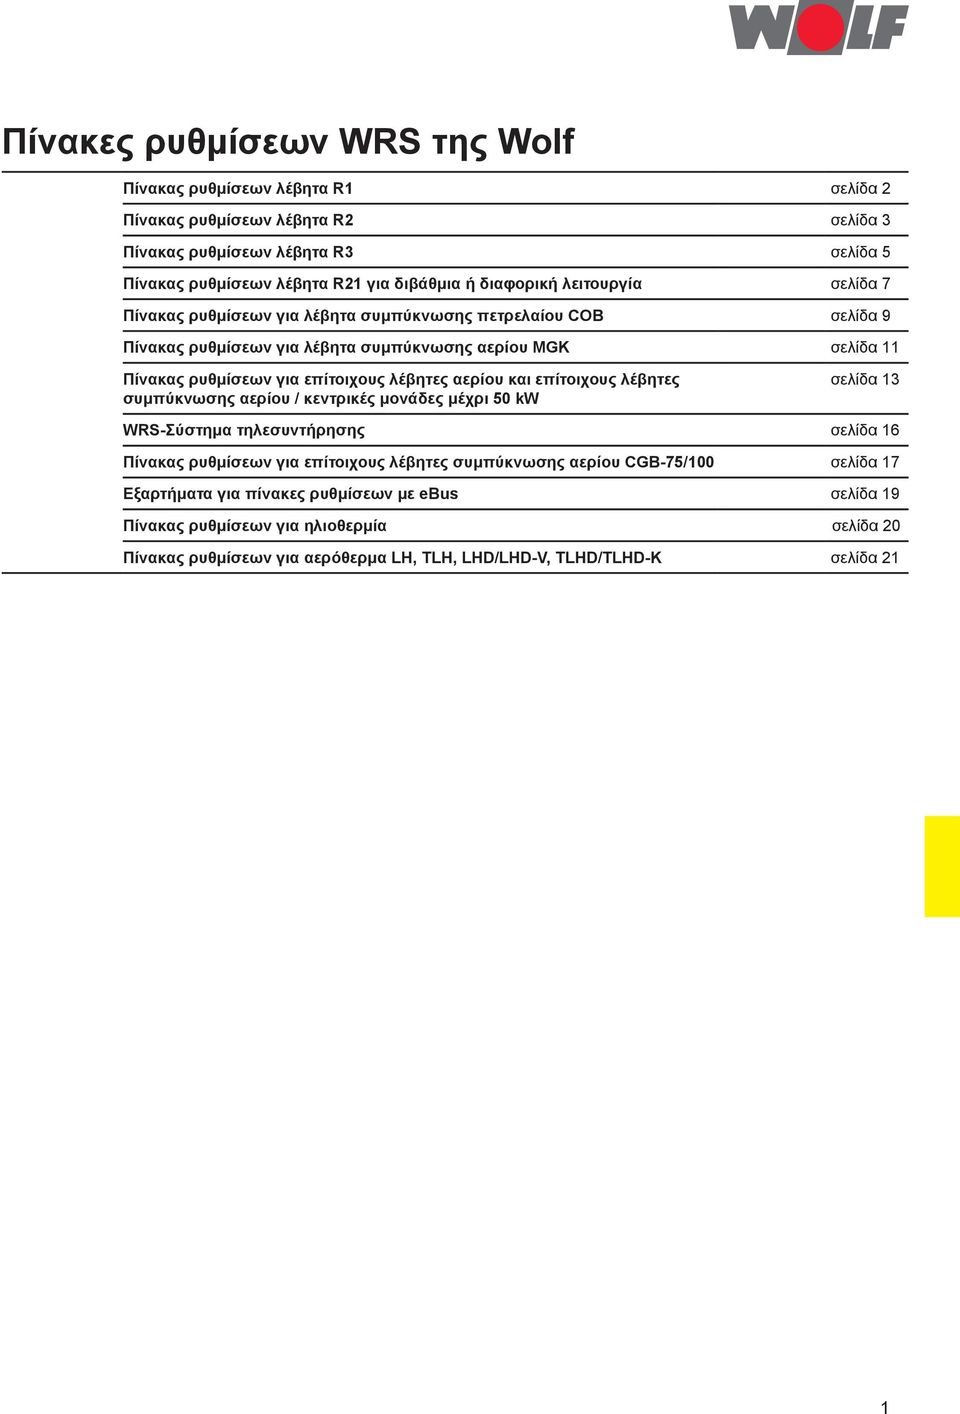 λέβητες αερίου και επίτοιχους λέβητες συμπύκνωσης αερίου / κεντρικές μονάδες μέχρι 50 kw σελίδα 13 WRS-Σύστημα τηλεσυντήρησης σελίδα 16 Πίνακας ρυθμίσεων για επίτοιχους λέβητες συμπύκνωσης